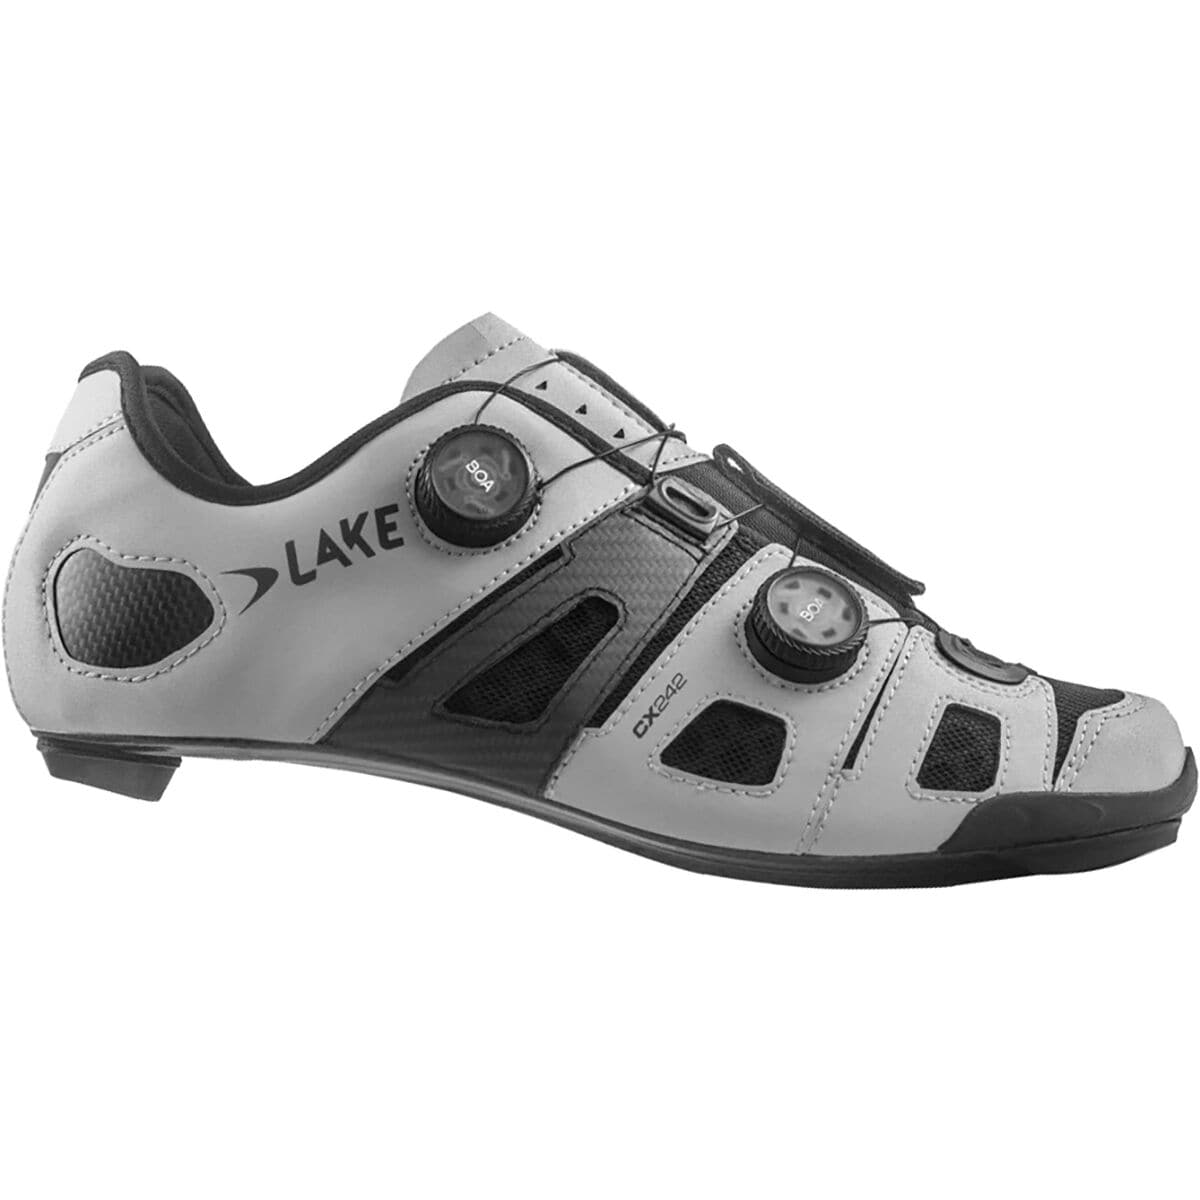 Lake CX242 Cycling Shoe - Men's Reflective Silver/Grey Microfiber, 42.0